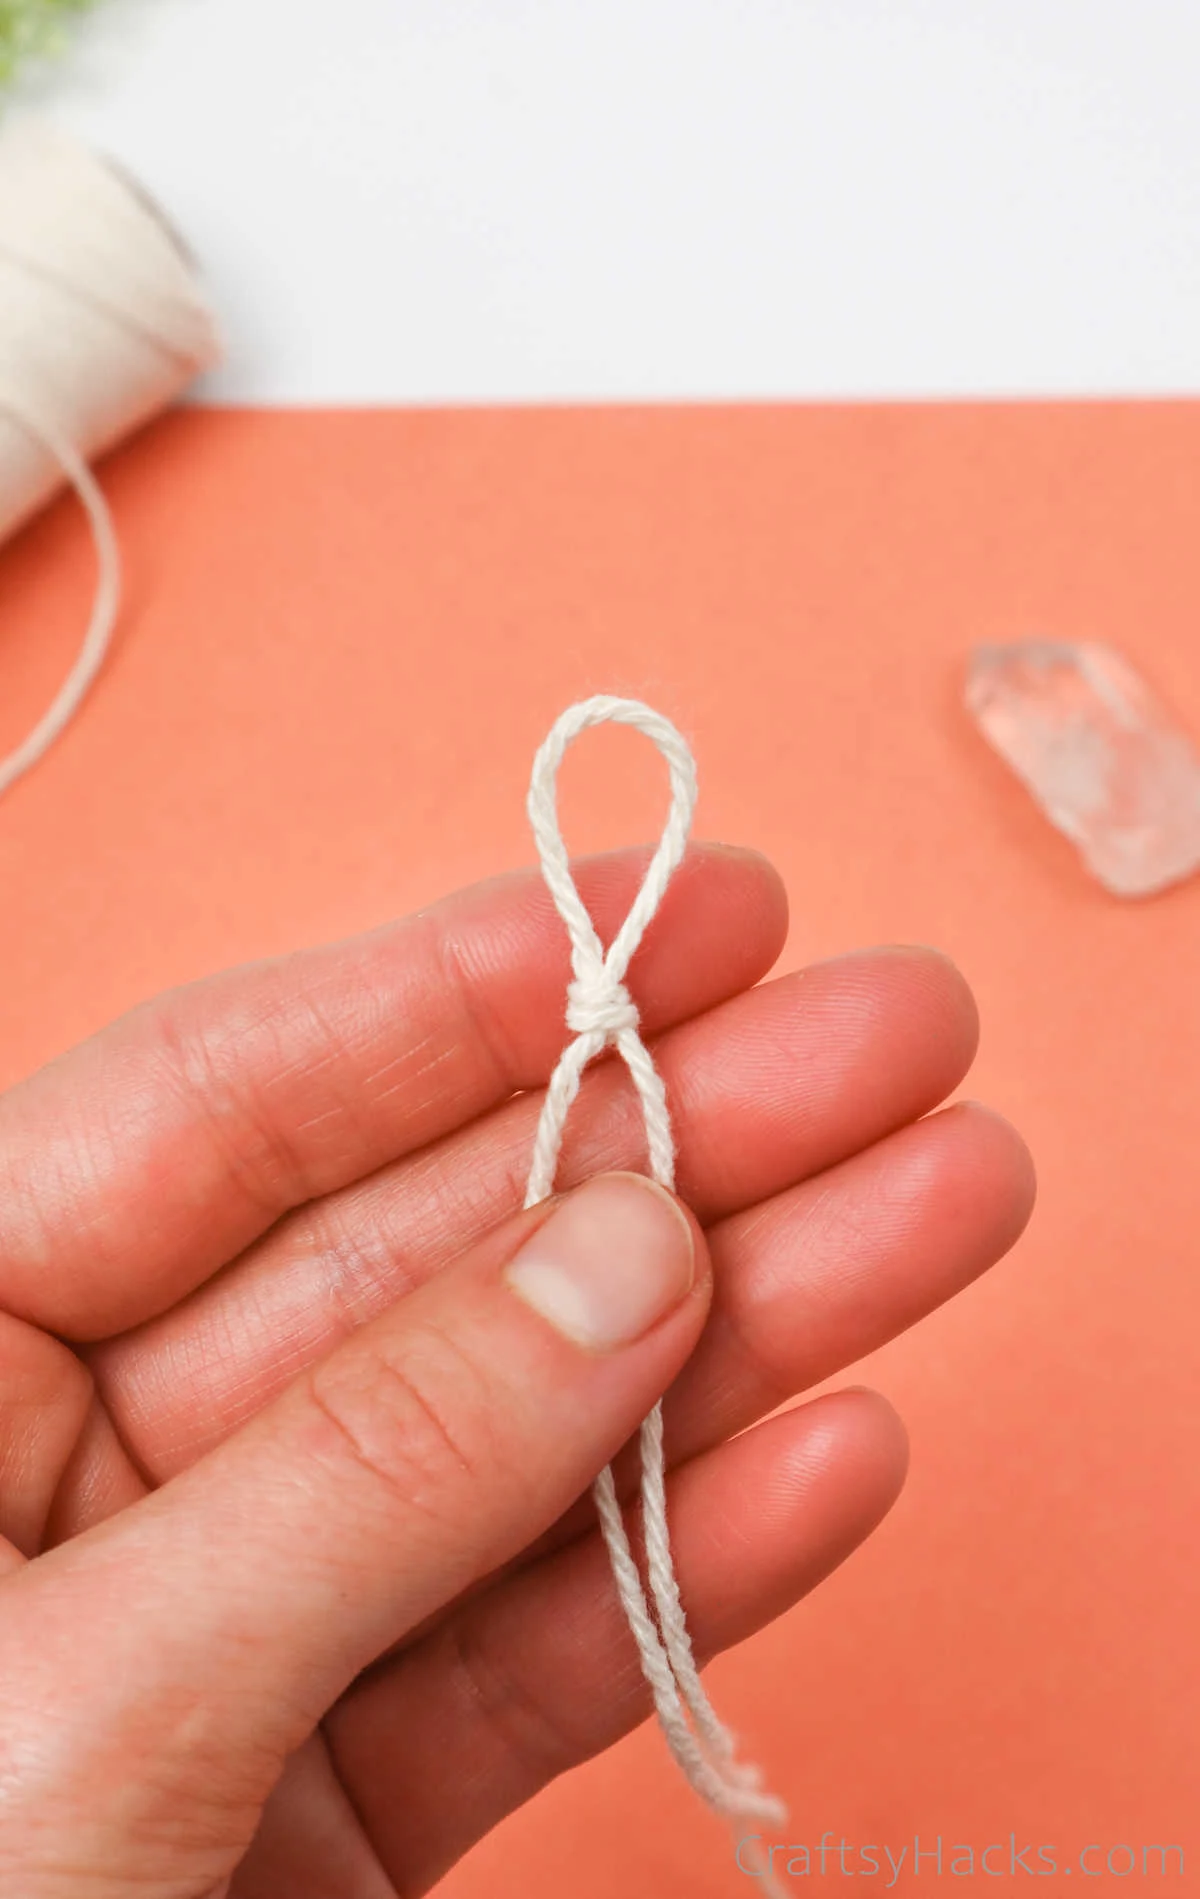 knot in string loop